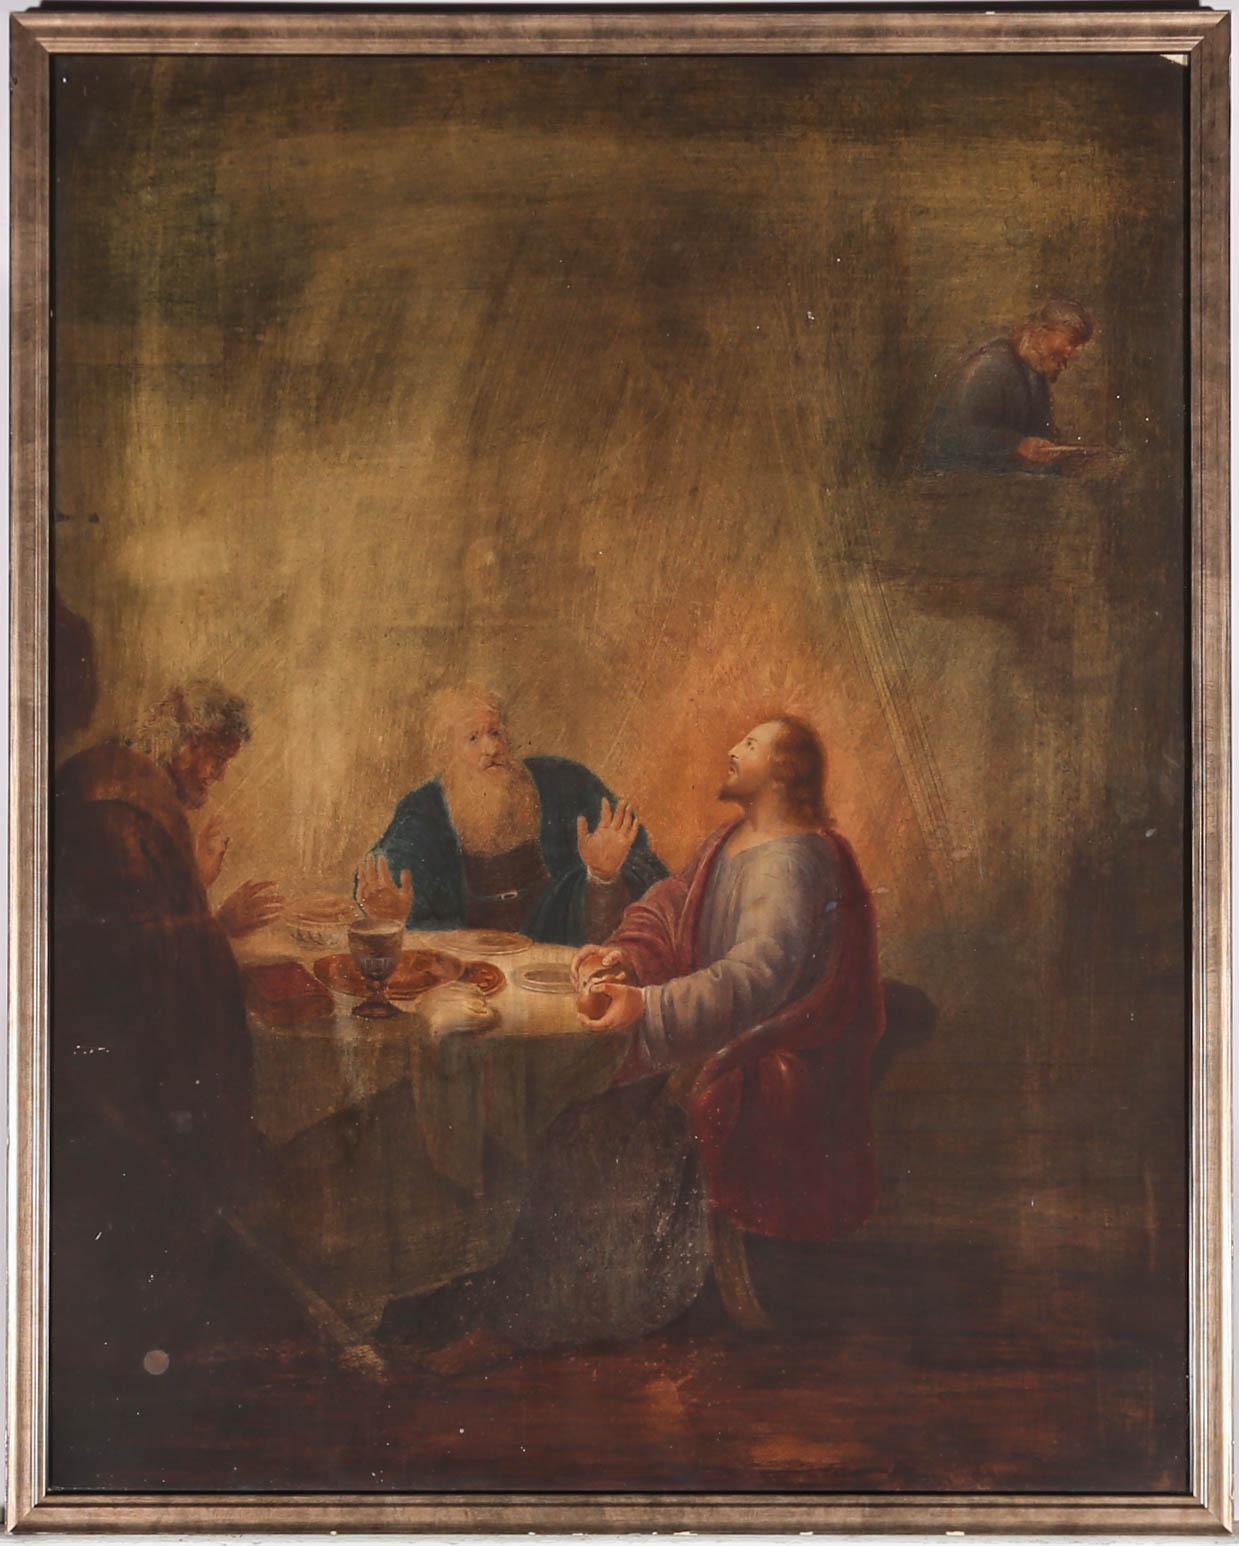 Cette charmante étude d'école de vieux maîtres néerlandais du XIXe siècle est tirée du tableau de Dirck van Santvoort de 1633 représentant le Christ se révélant aux pèlerins d'Emmaüs. L'original, qui se trouve aujourd'hui au Louvre, est fortement